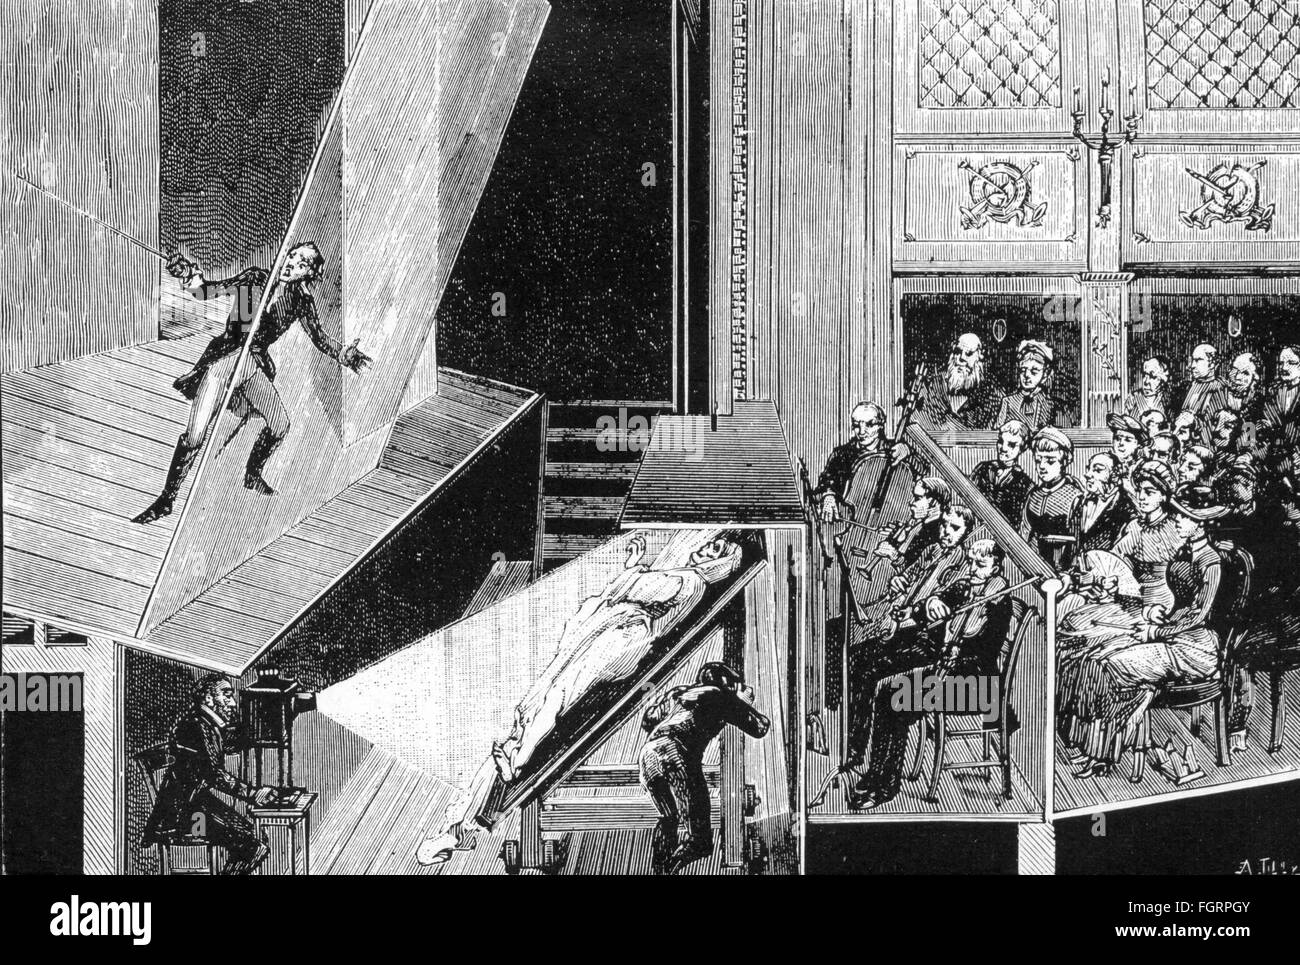 Cine / cine,inicios de la cinematografía,aparición según el principio de la  Cámara oscura para la película por George Melies(1861 - 1938),1898,grabado  de madera por A.Tilly,circa 1900,1 siglo IX,gráficos,trucos,efectos  especiales,efectos especiales ...